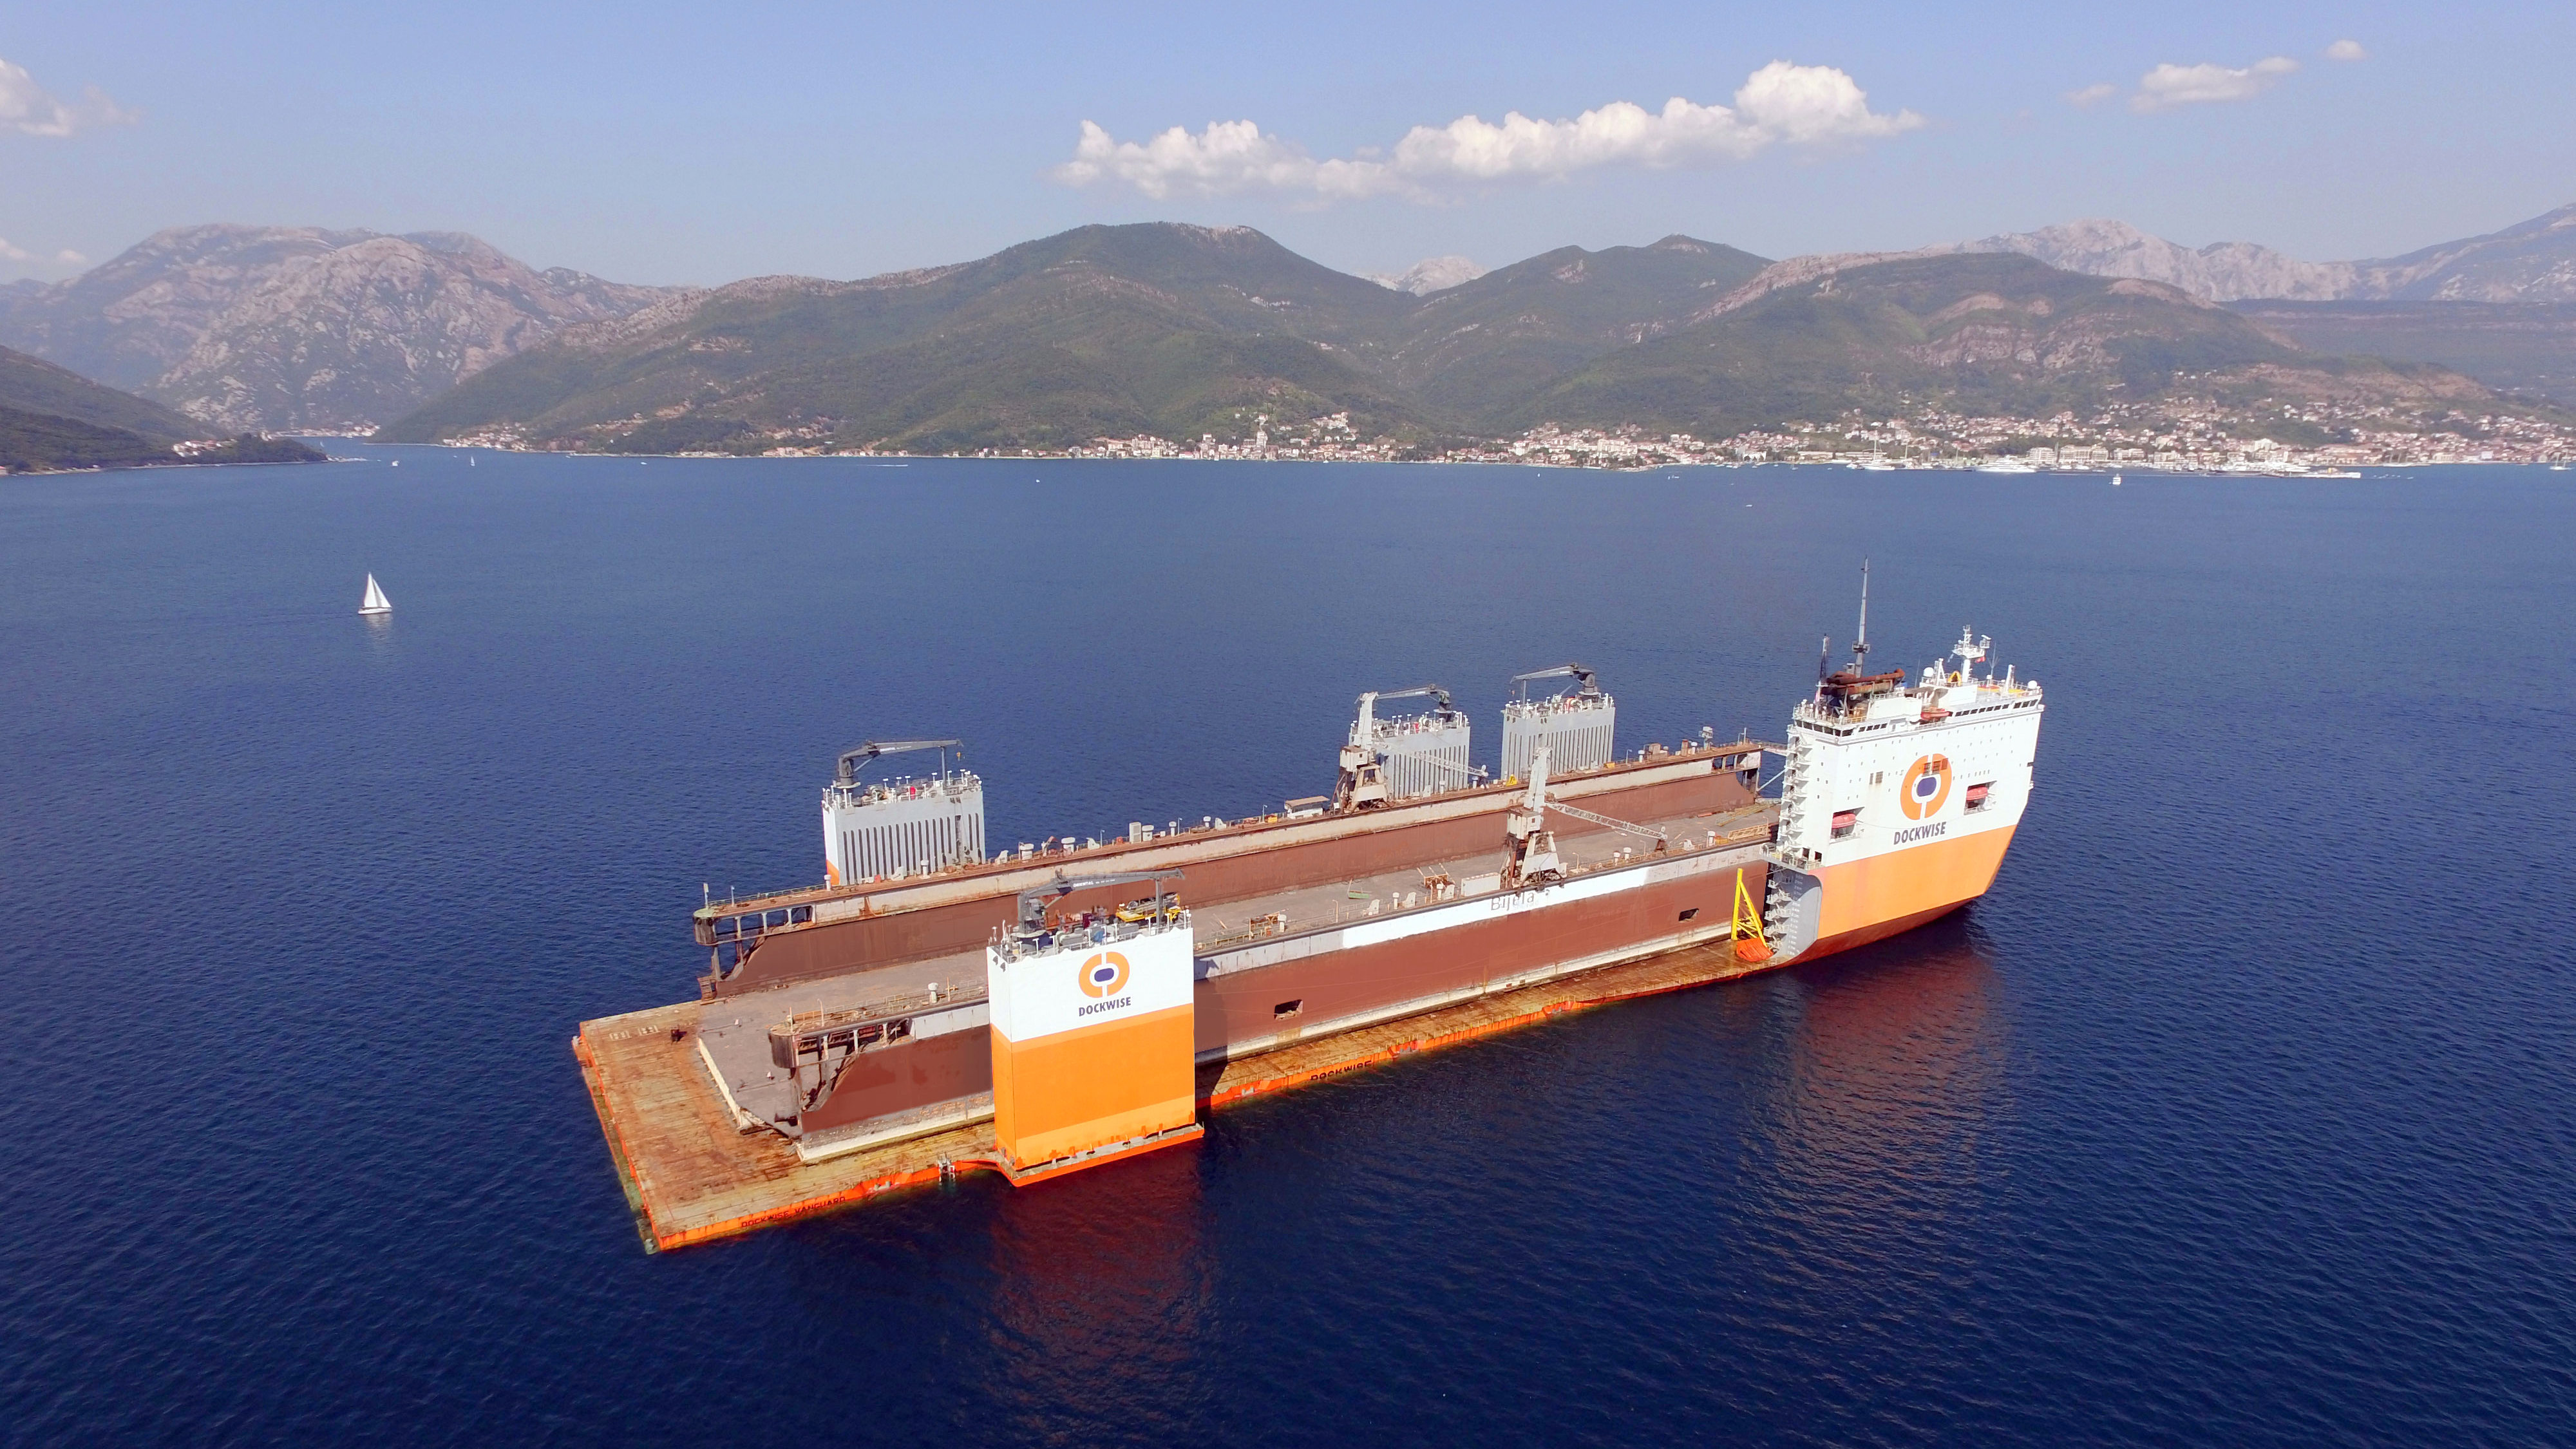 Didžiausias pasaulyje laivas „Dockwise Vanguard“ iš Juodkalnijos į Lietuvą gabena plaukiojantį doką